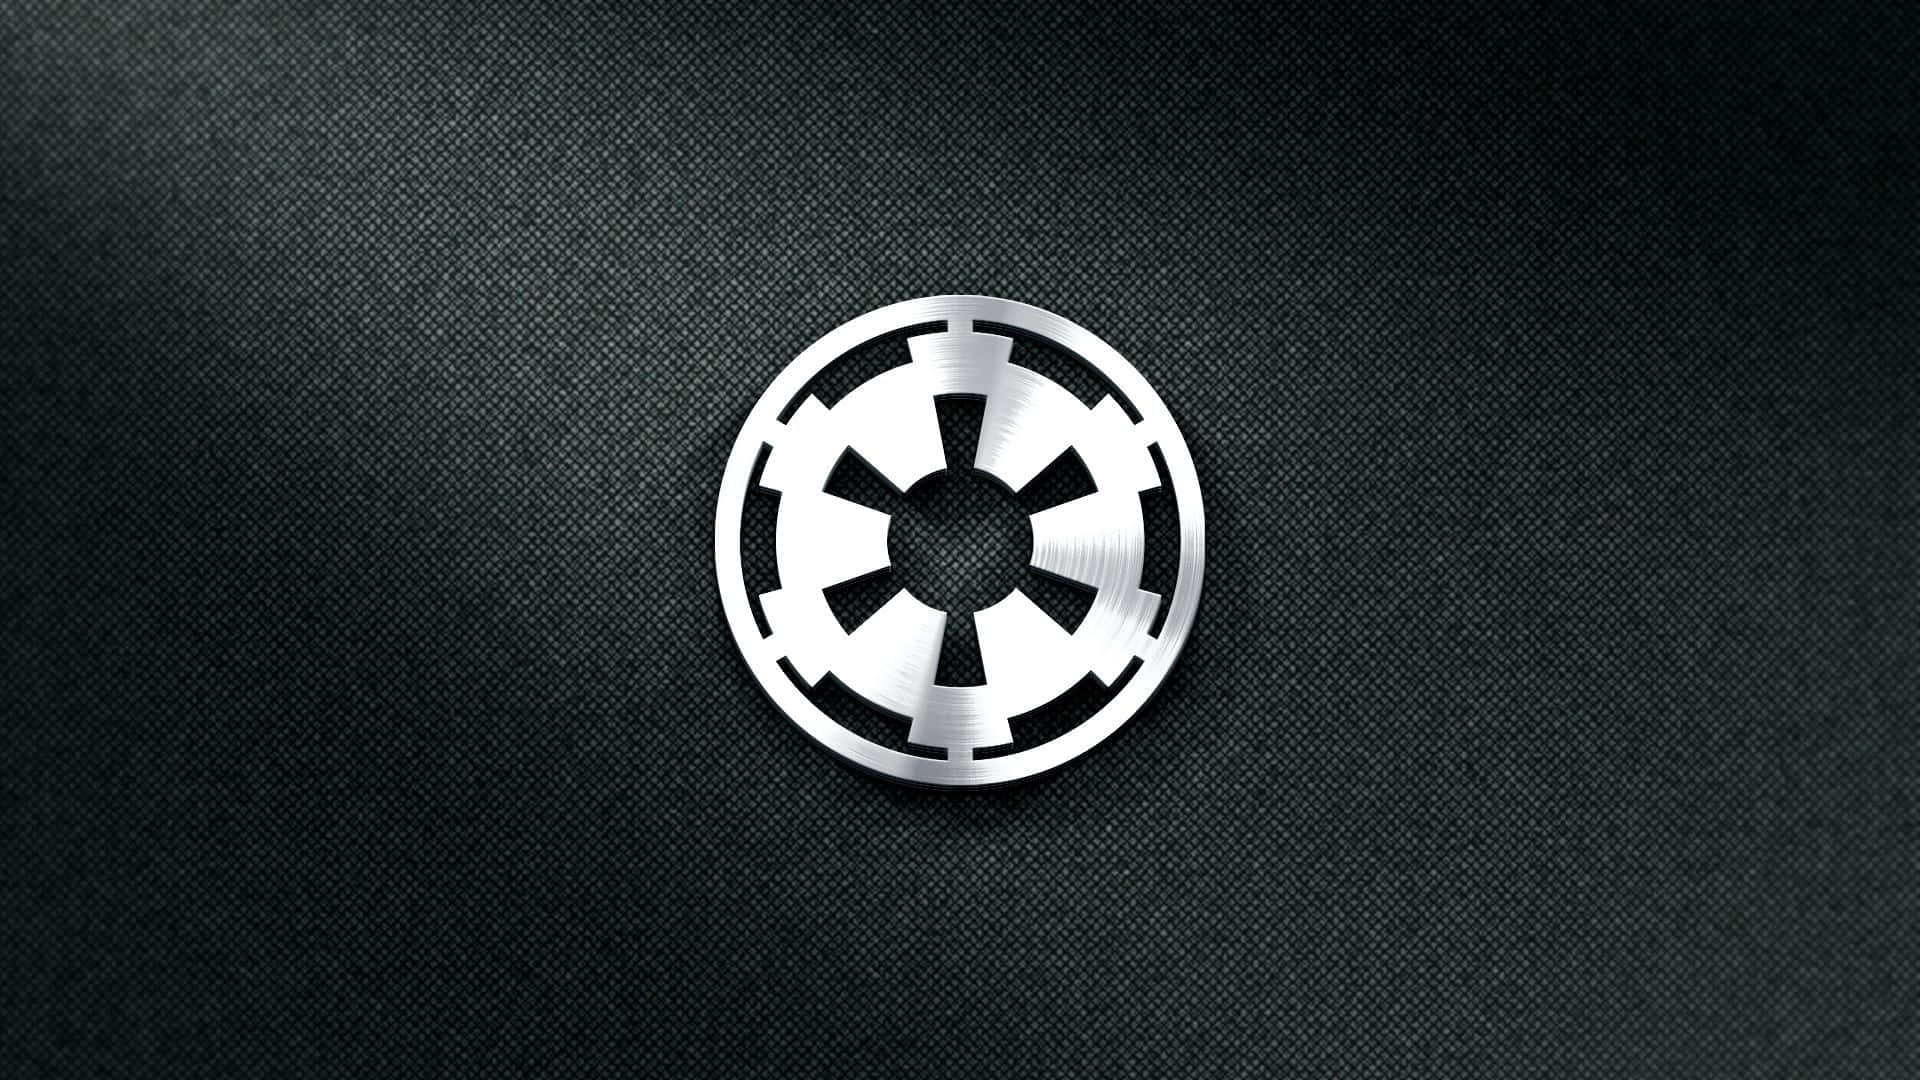 Ellogotipo Oficial Del Imperio Galáctico De La Trilogía Original De Star Wars Fondo de pantalla